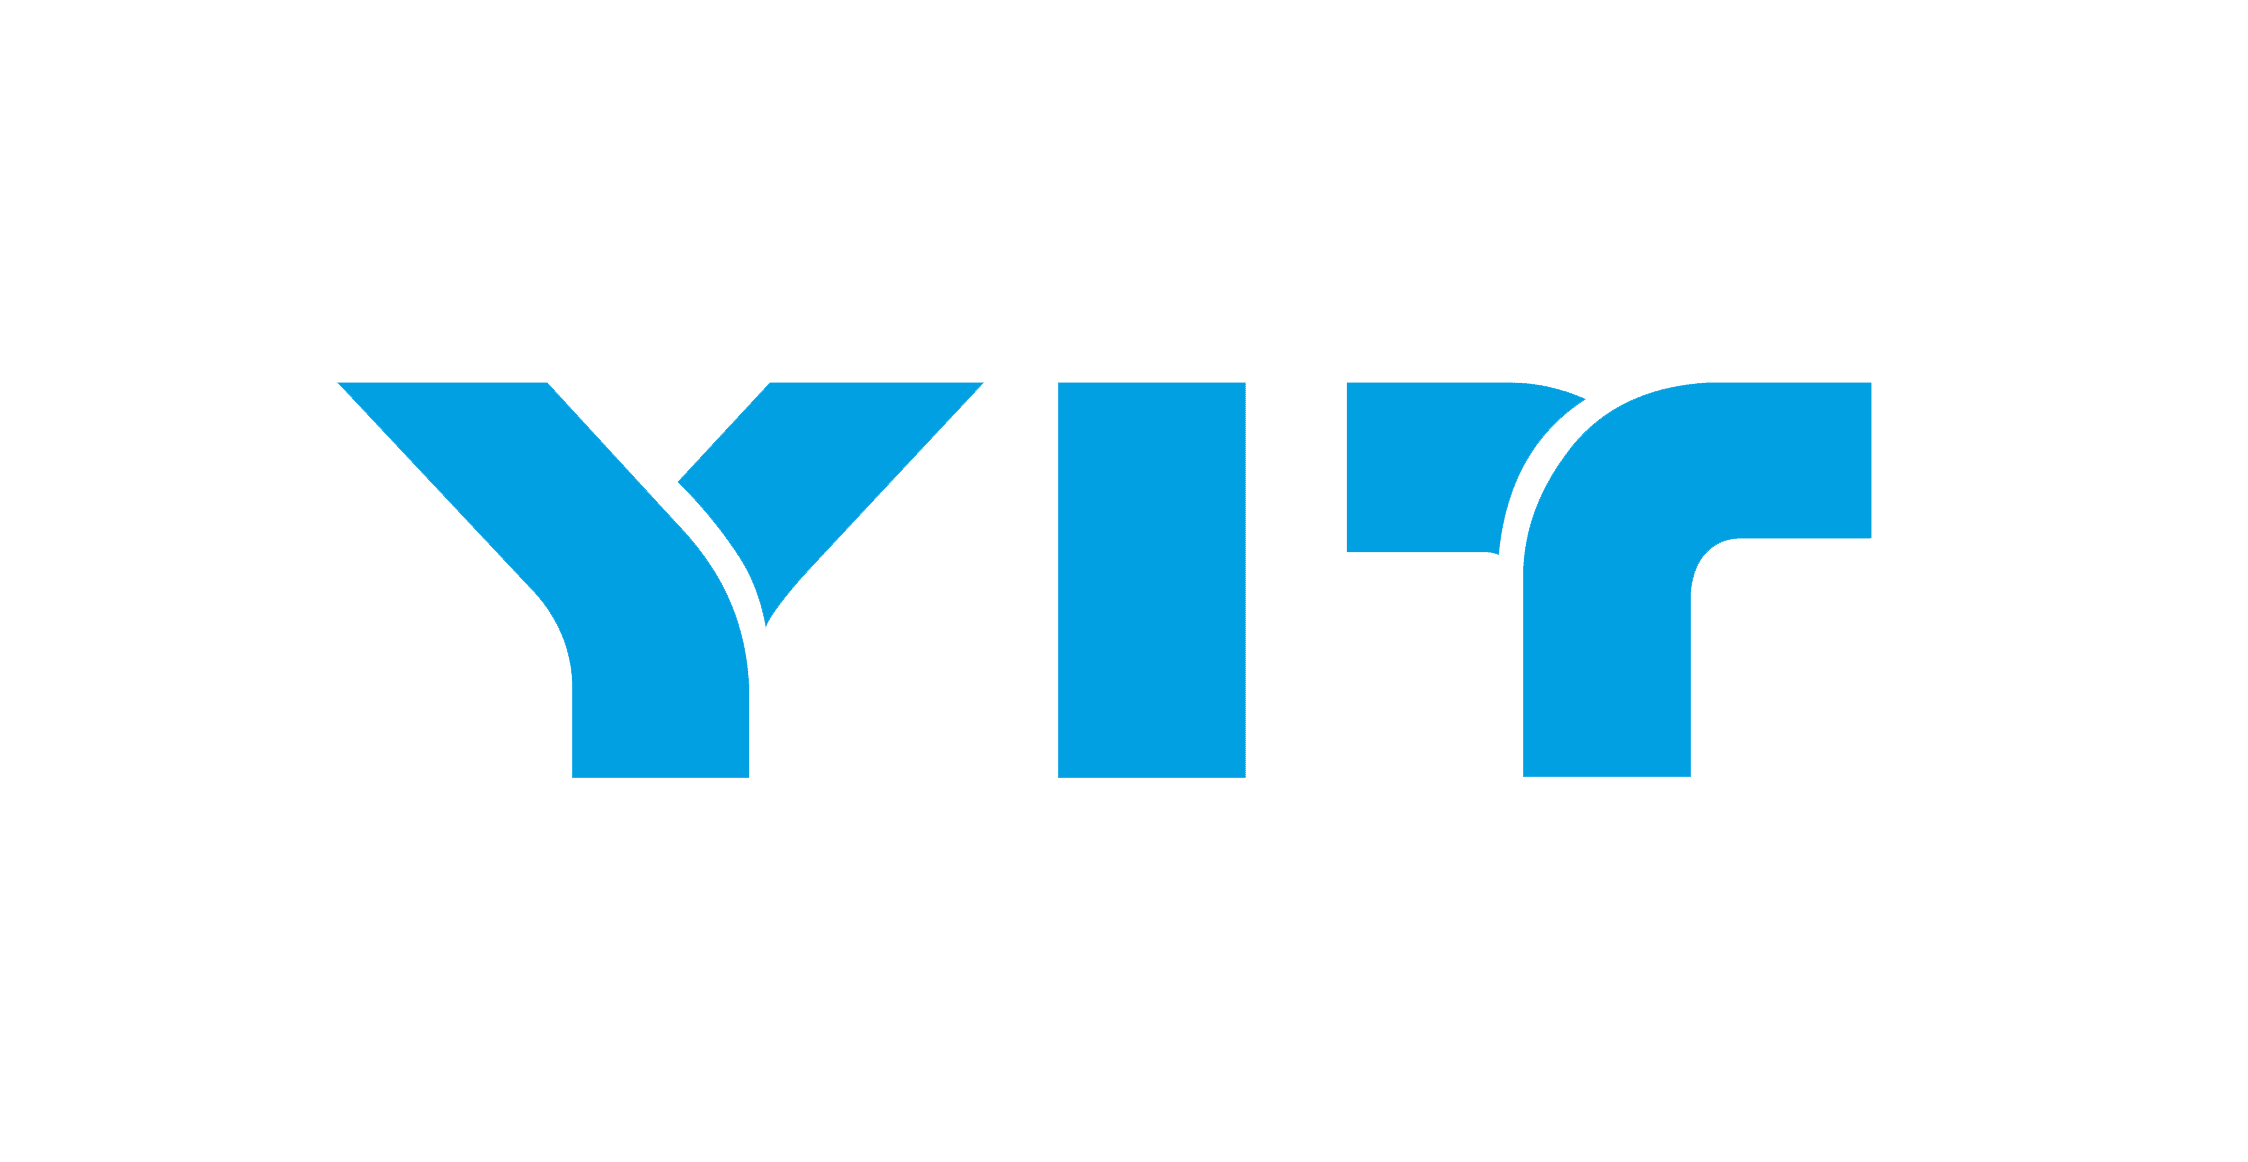 YIT - крупнейшая финская и одна из крупных североевропейских девелоперских и строительных компаний